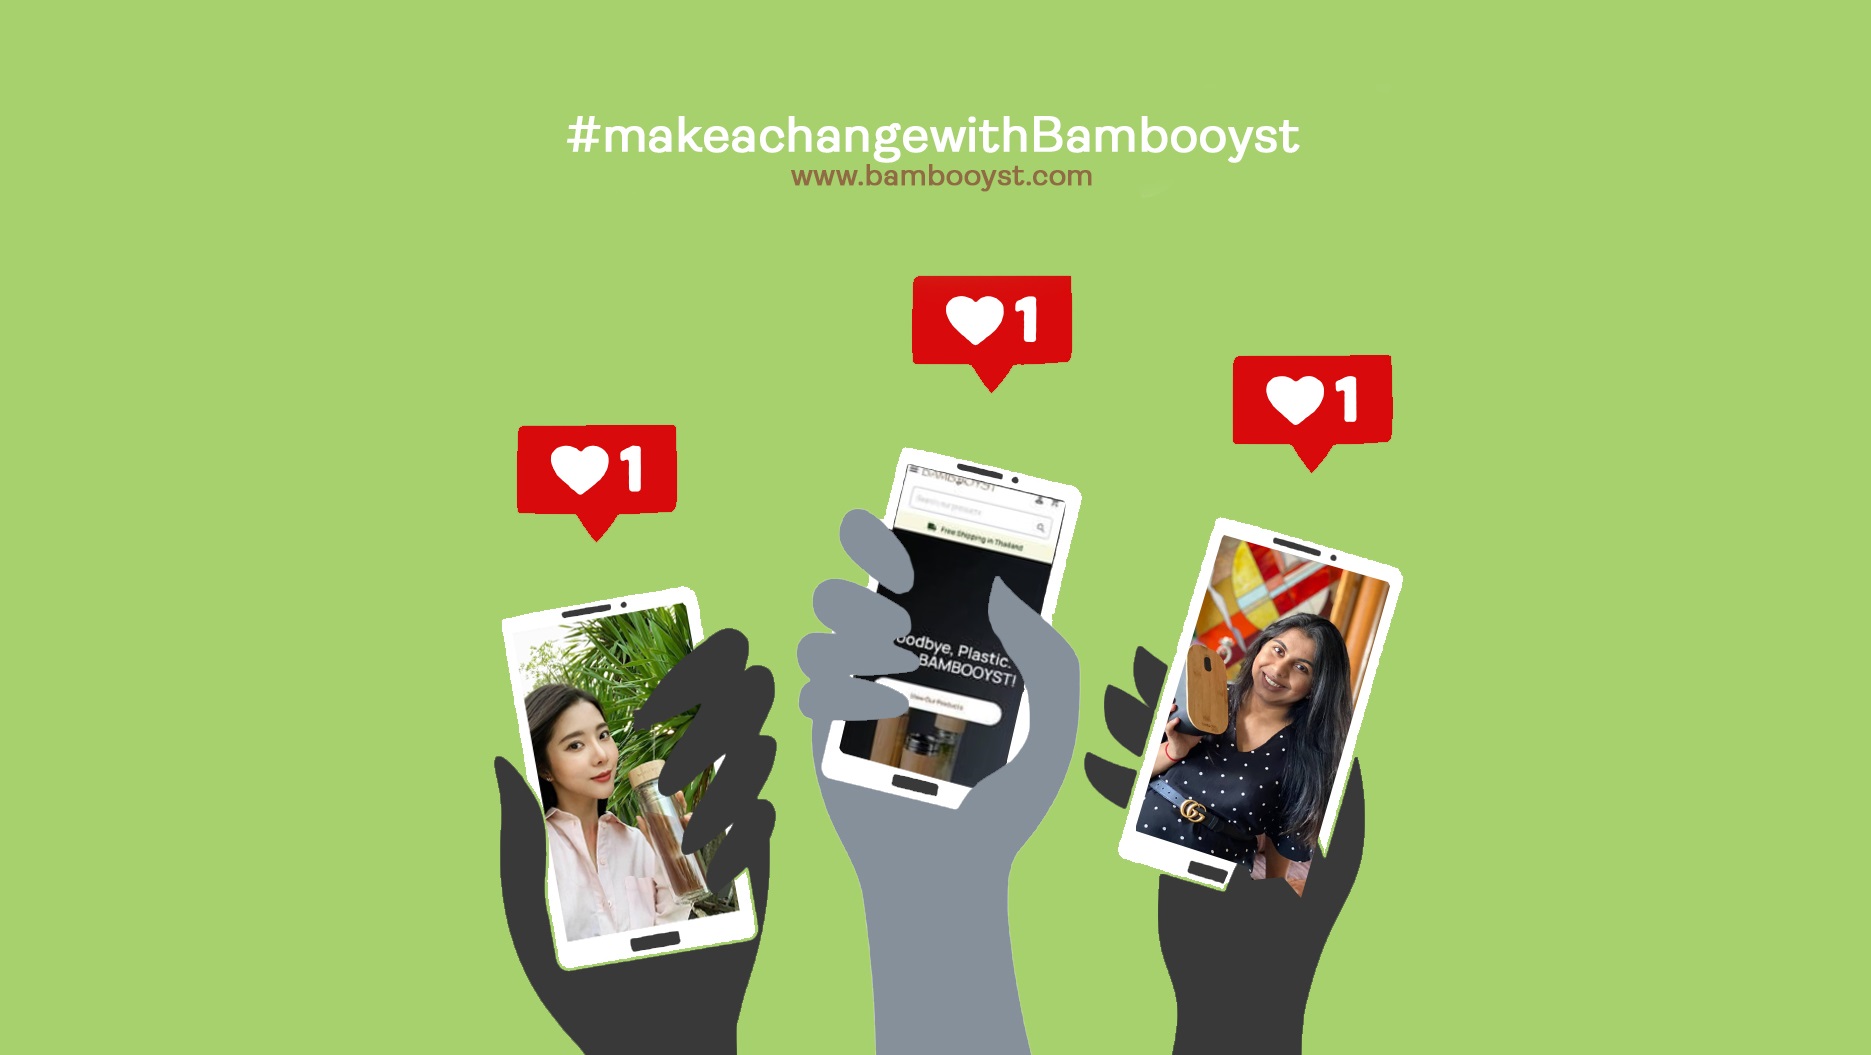 Hashtag Bambooyst